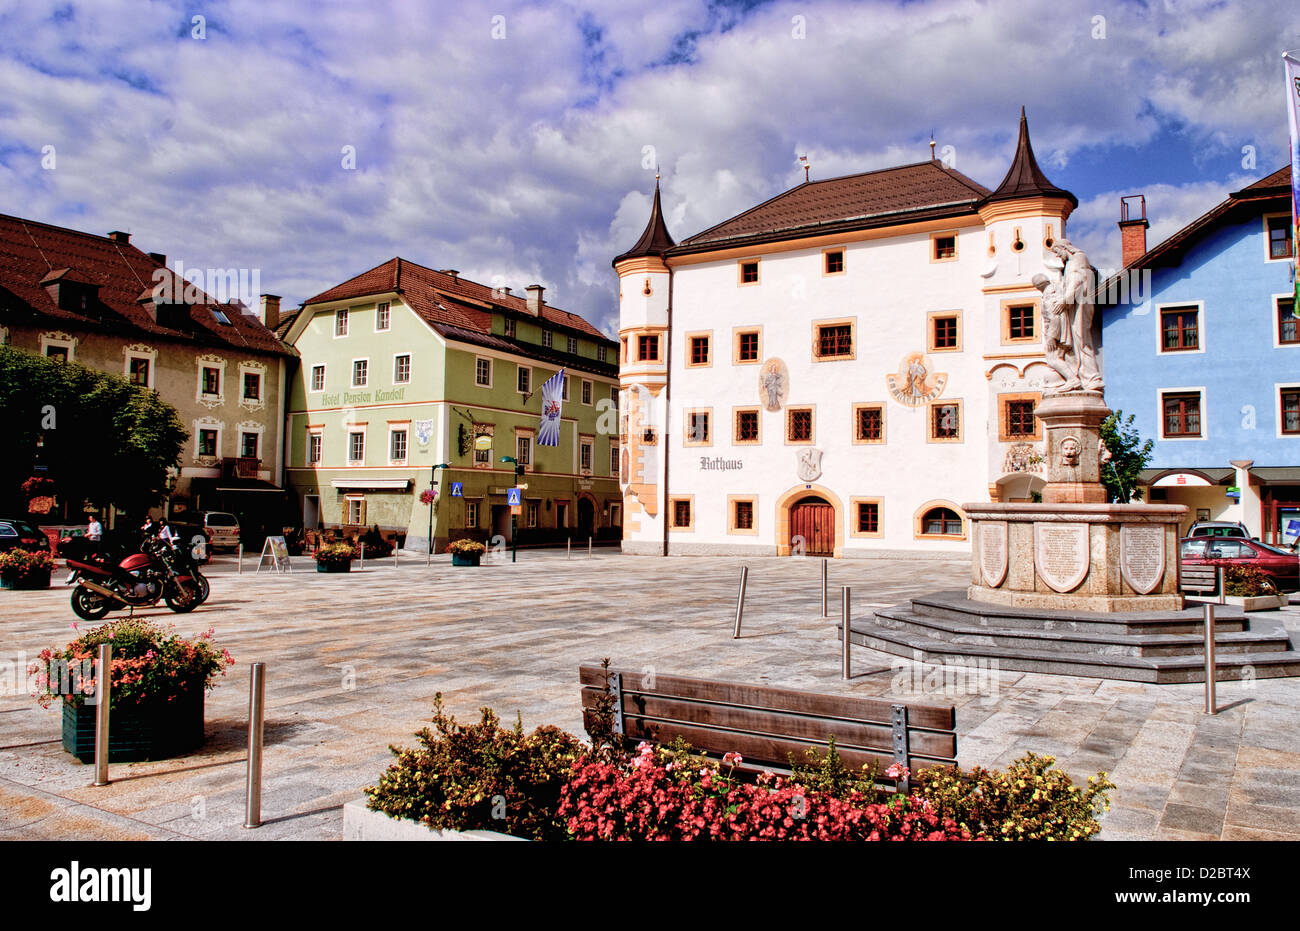 Town Square In Mauterndorf, Austria Stock Photo